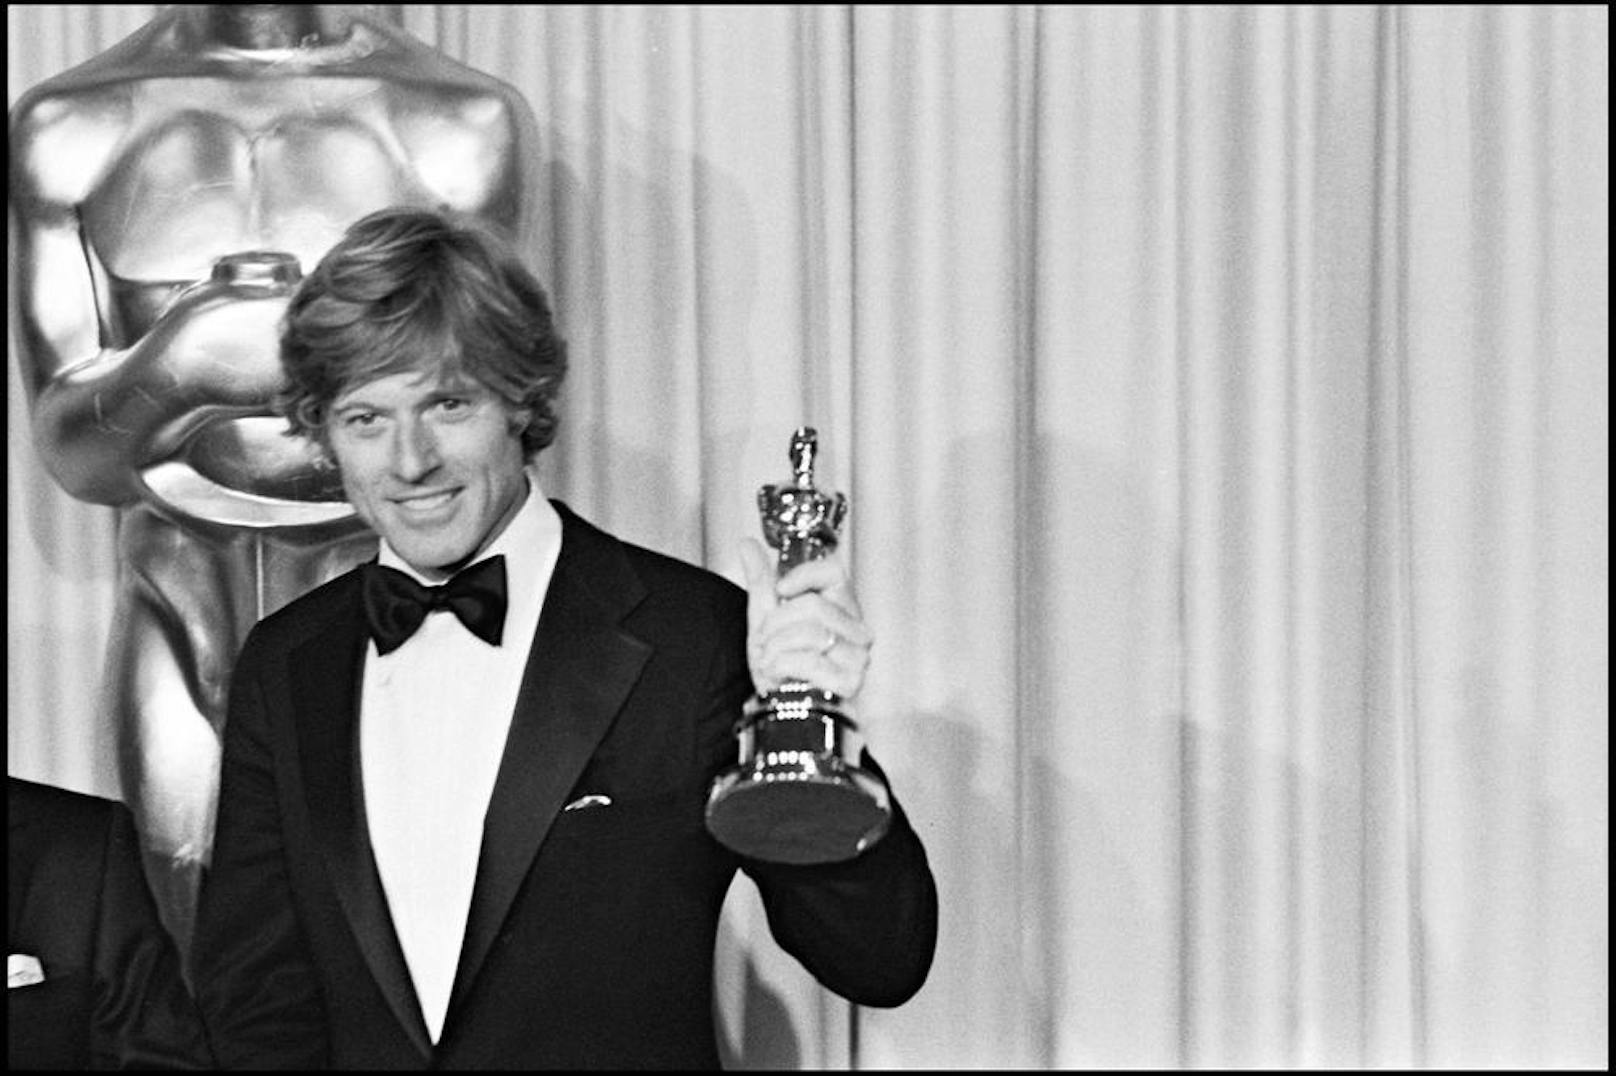 Schauspieler Robert Redford bekam den Oscar für "Ordinary People" im Jahr 1981.